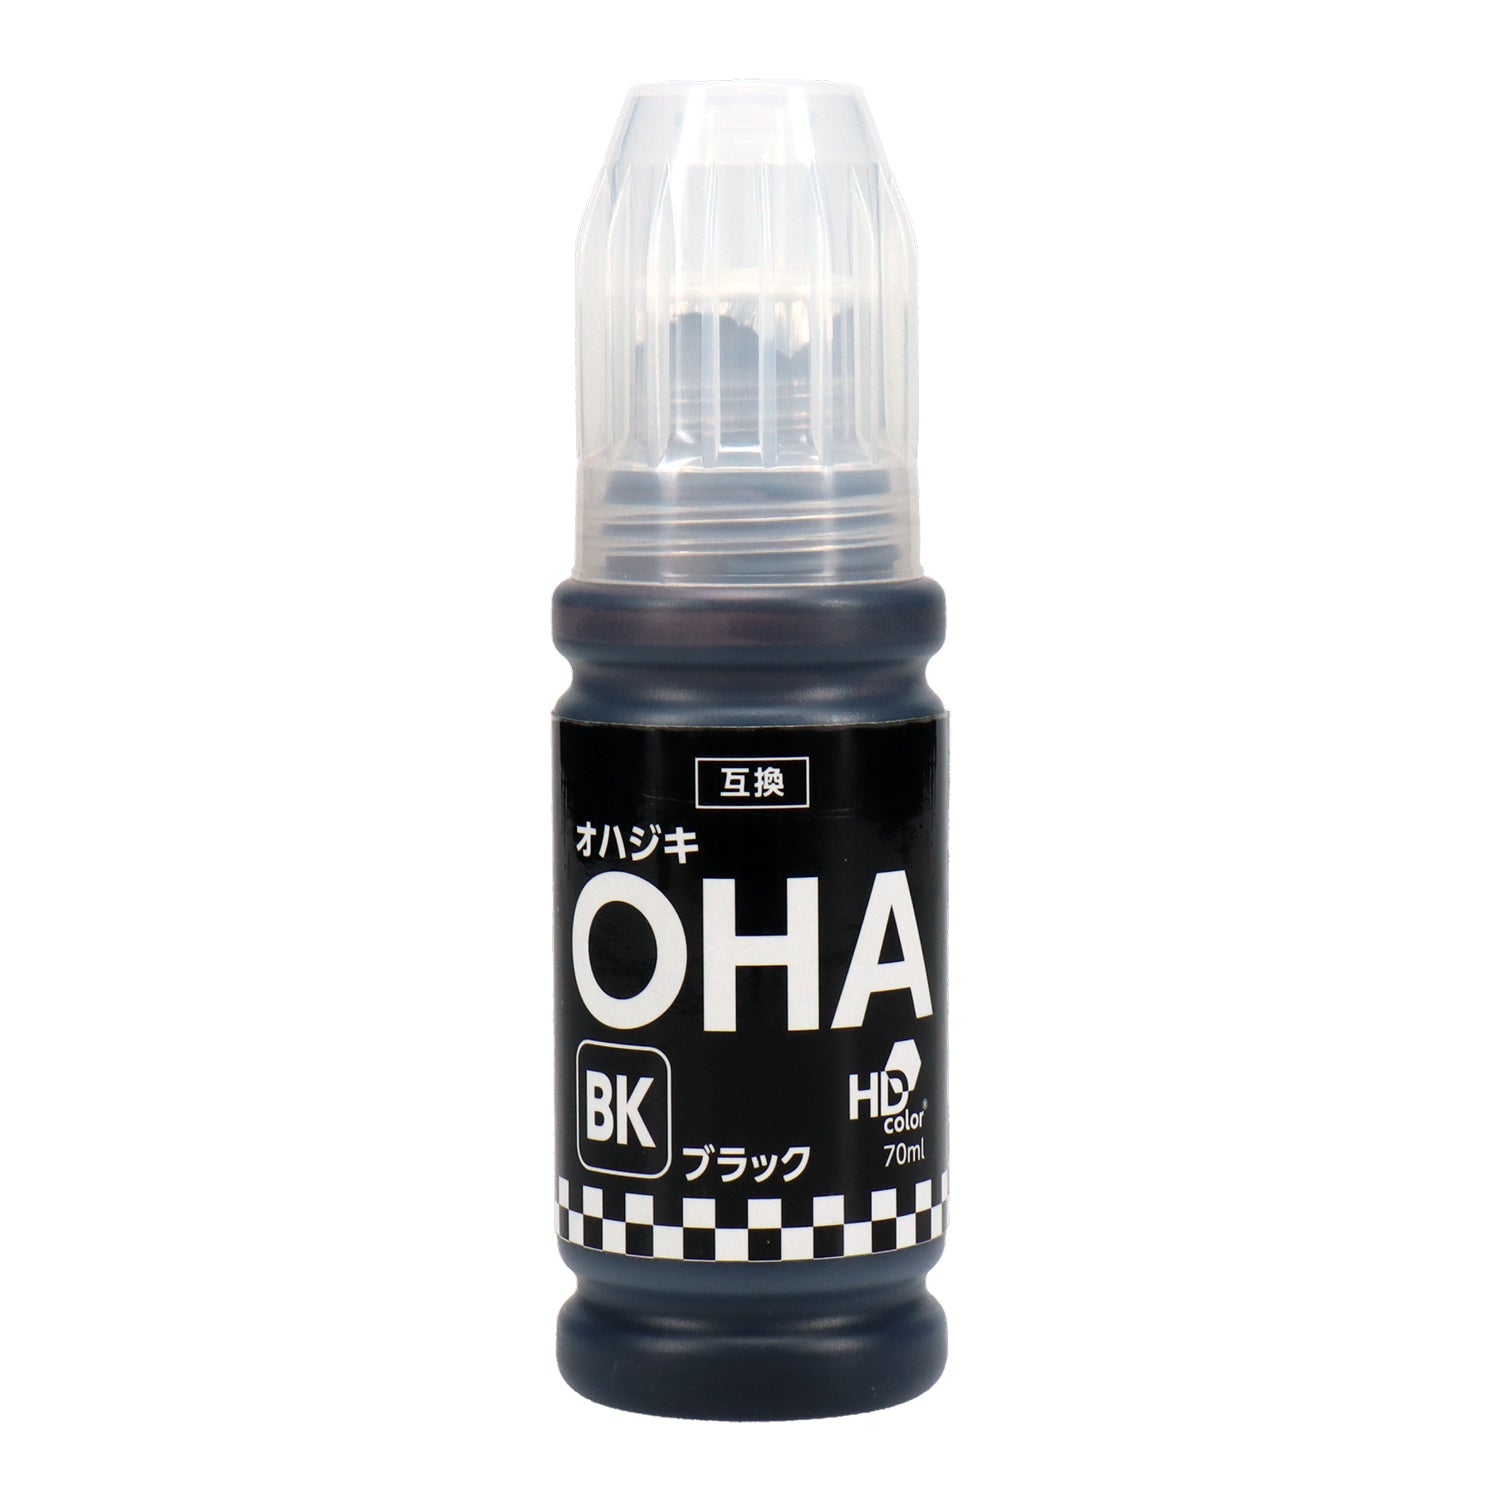 エプソン用 OHA-BK (オハジキ) 互換インクボトル ブラック